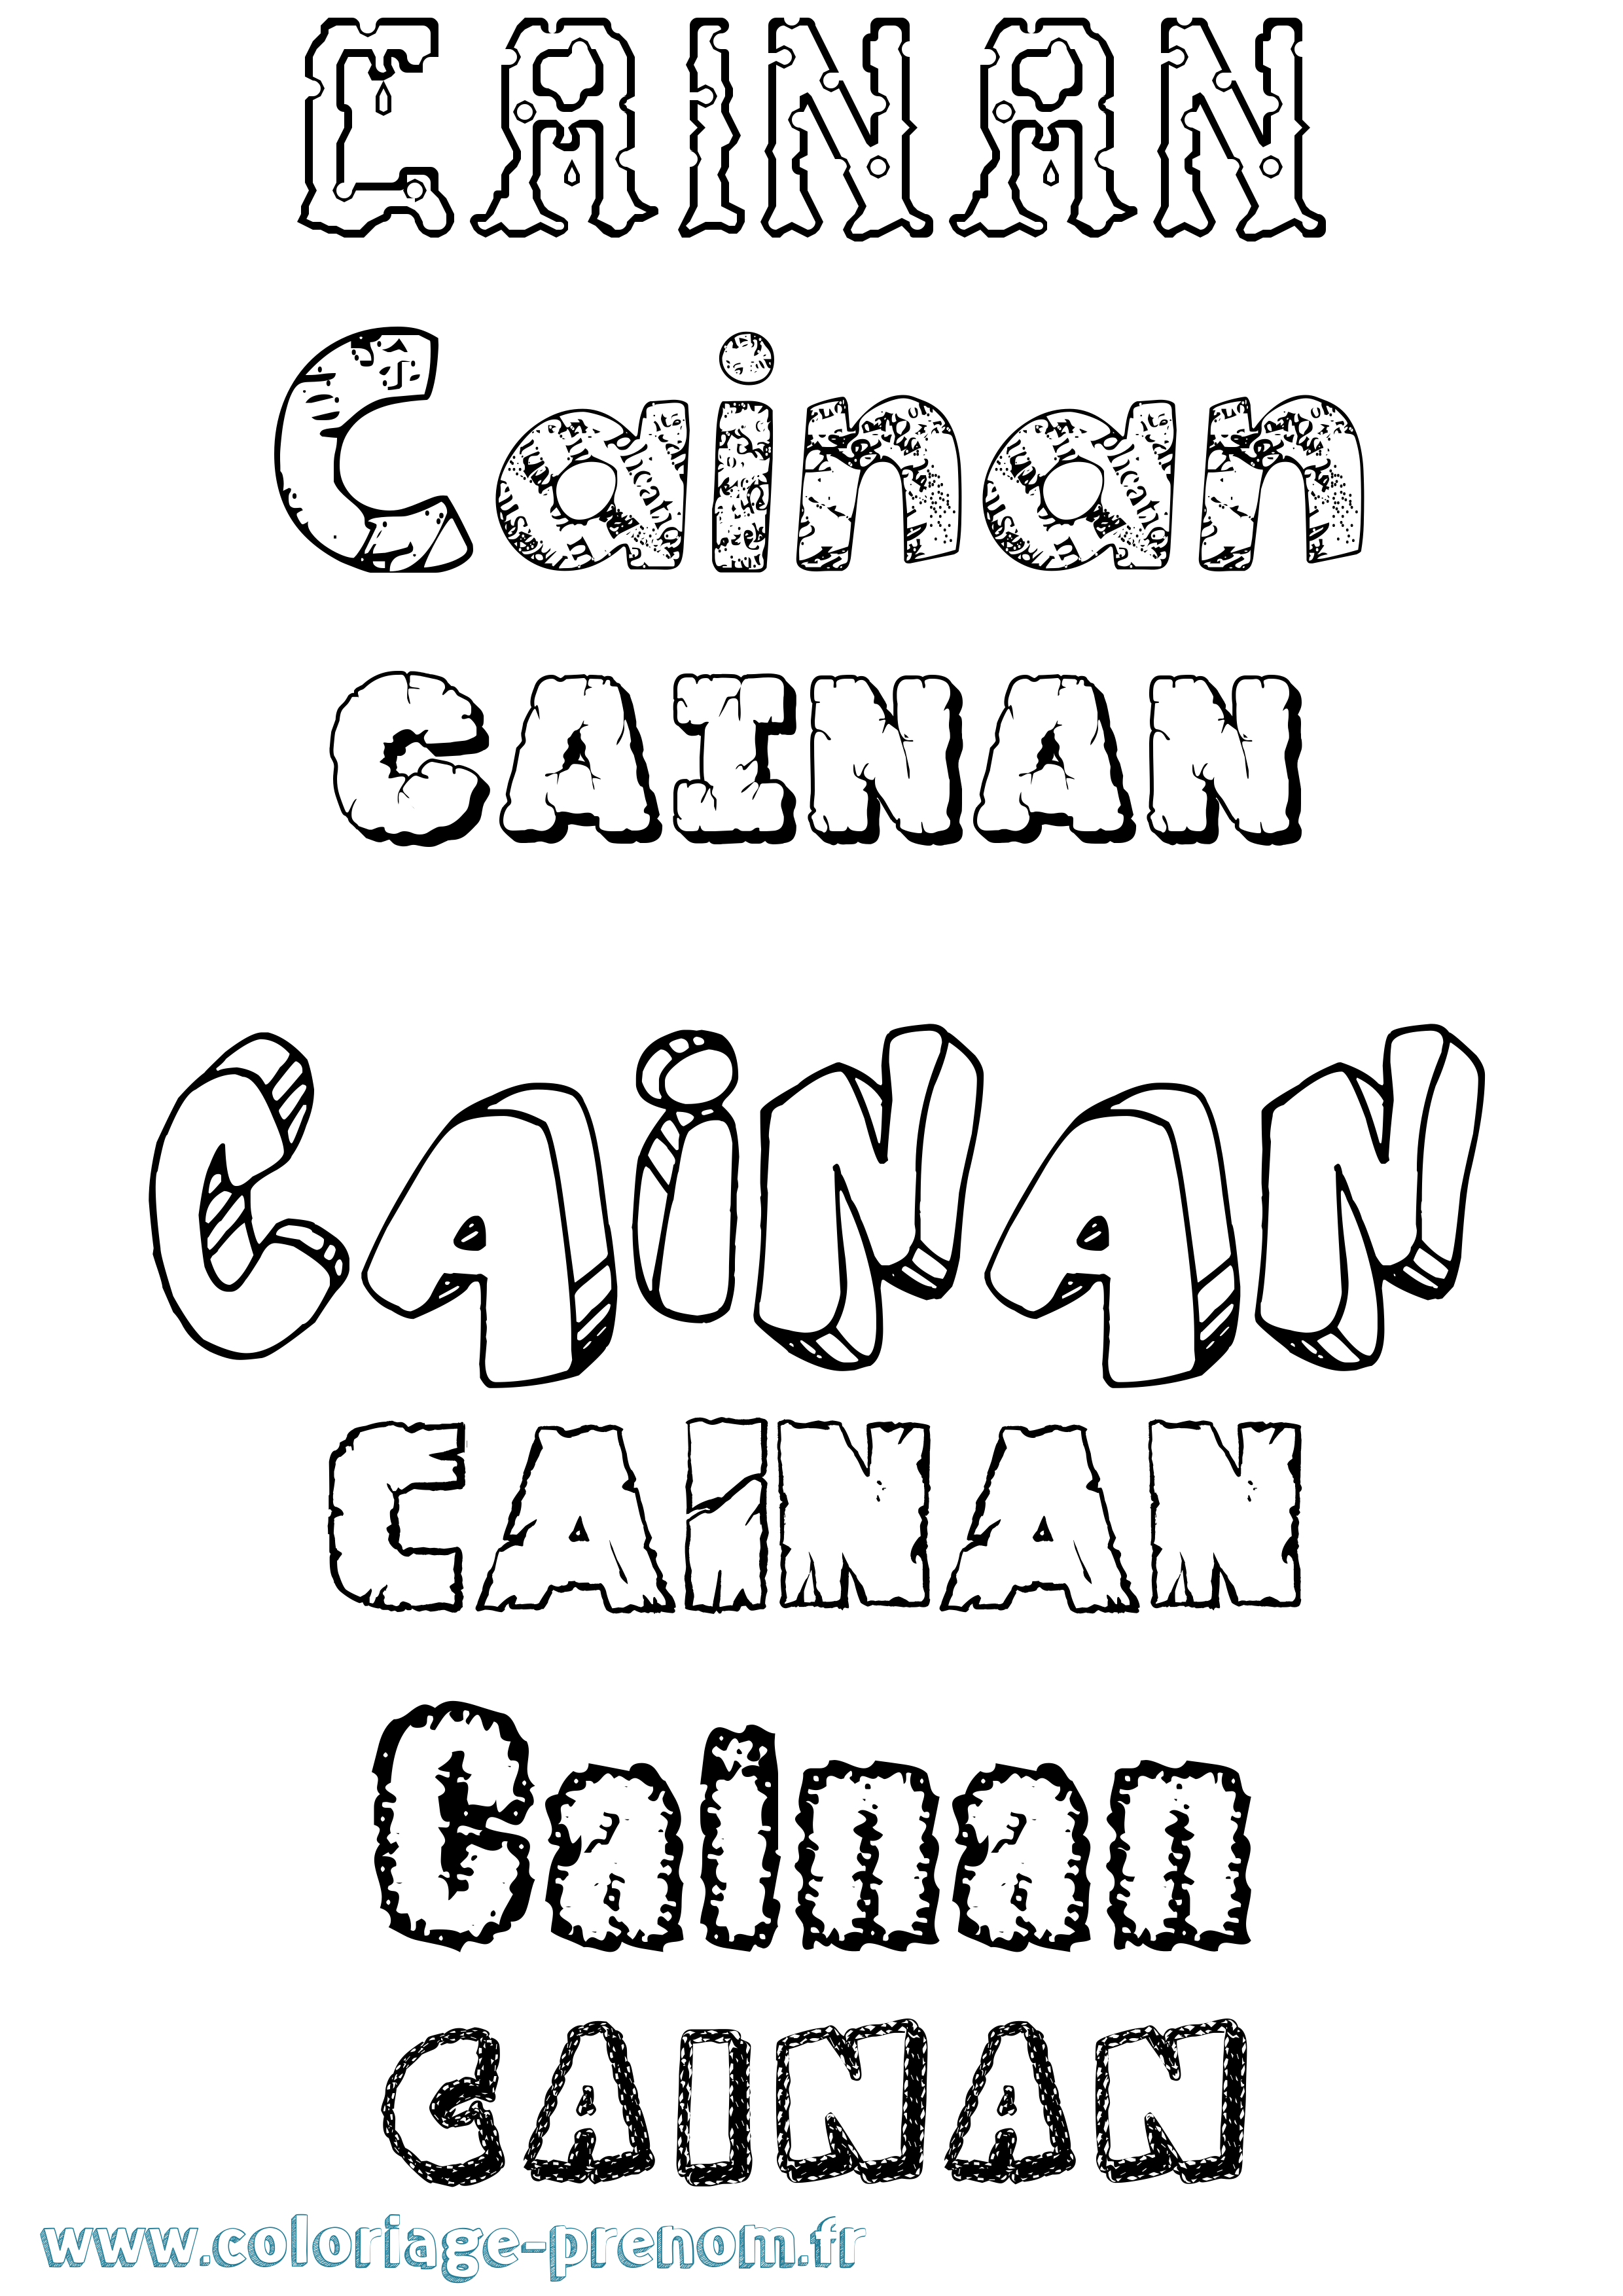 Coloriage prénom Cainan Destructuré